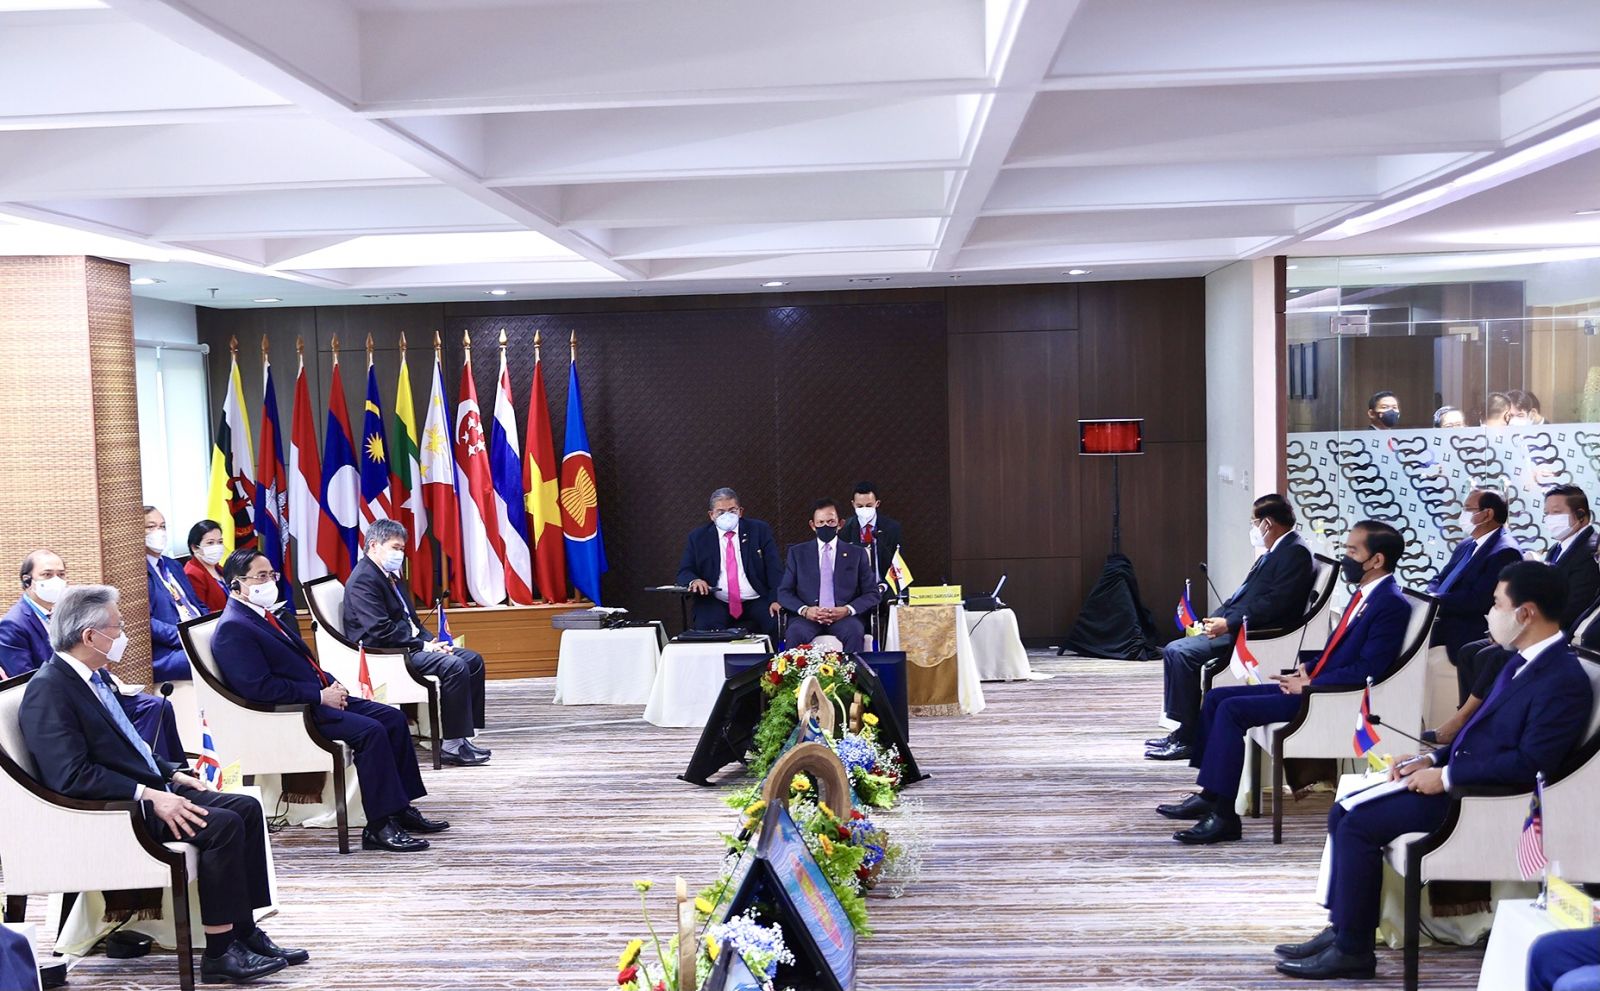 Thủ tướng Phạm Minh Chính kết thúc tốt đẹp chuyến công tác tham dự Hội nghị các Nhà Lãnh đạo ASEAN